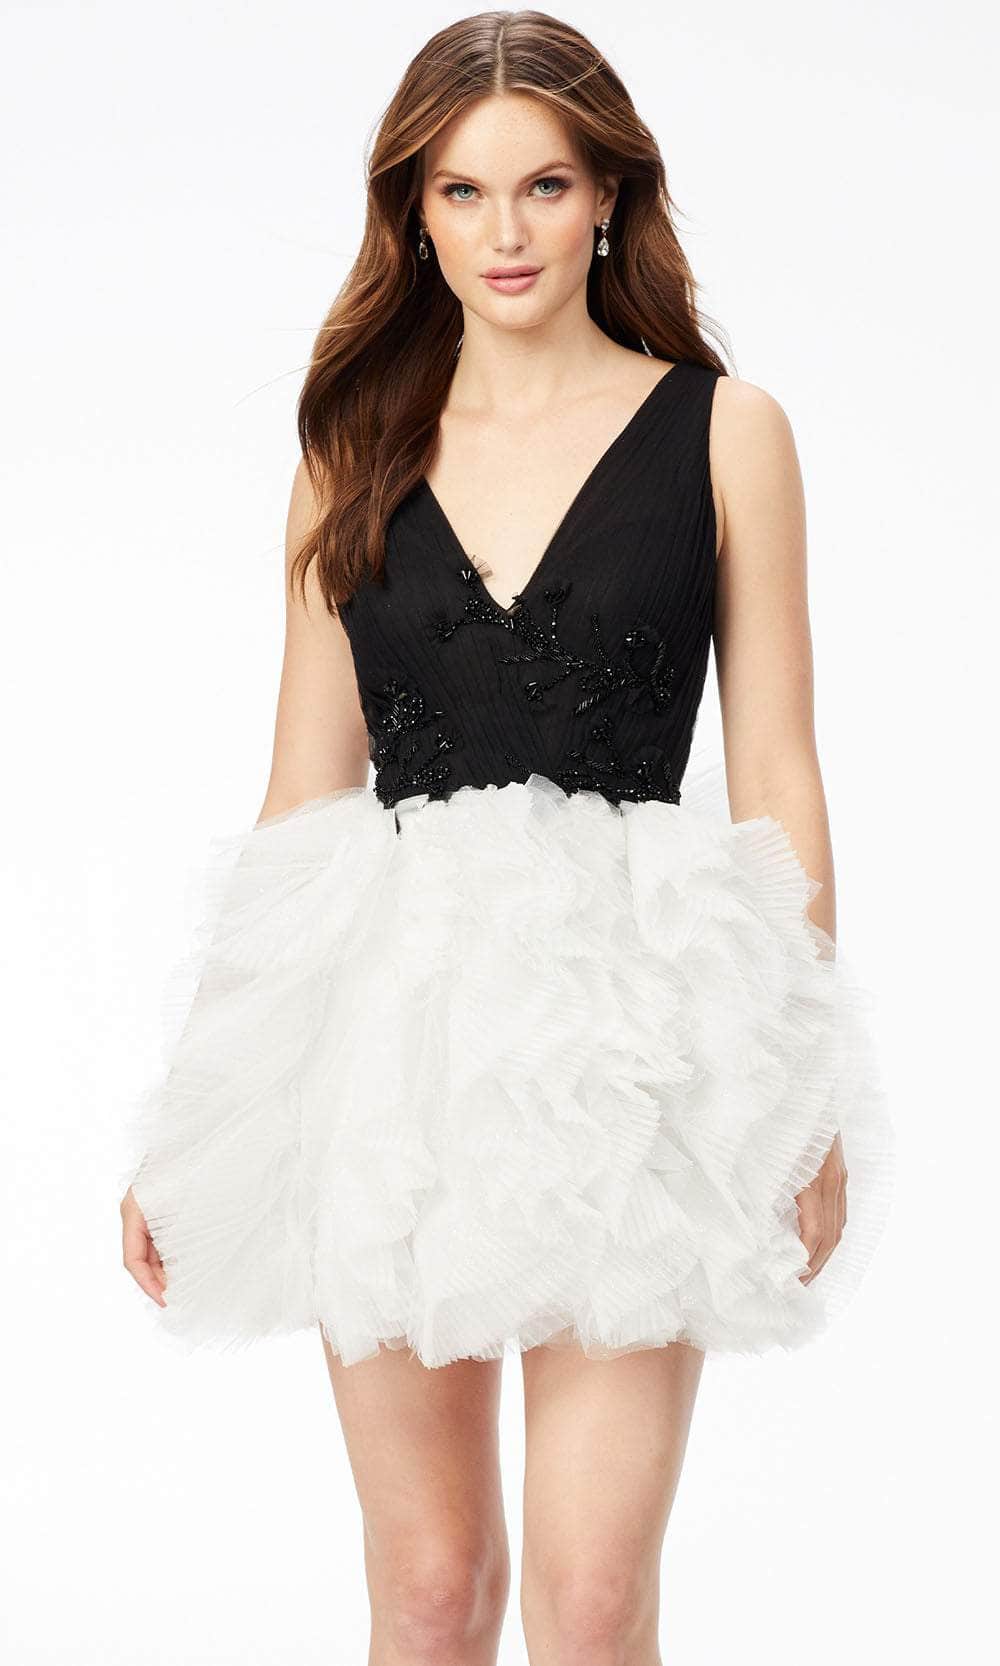 Image of Ashley Lauren 4546 - Ruffled Skirt Cocktail Dress